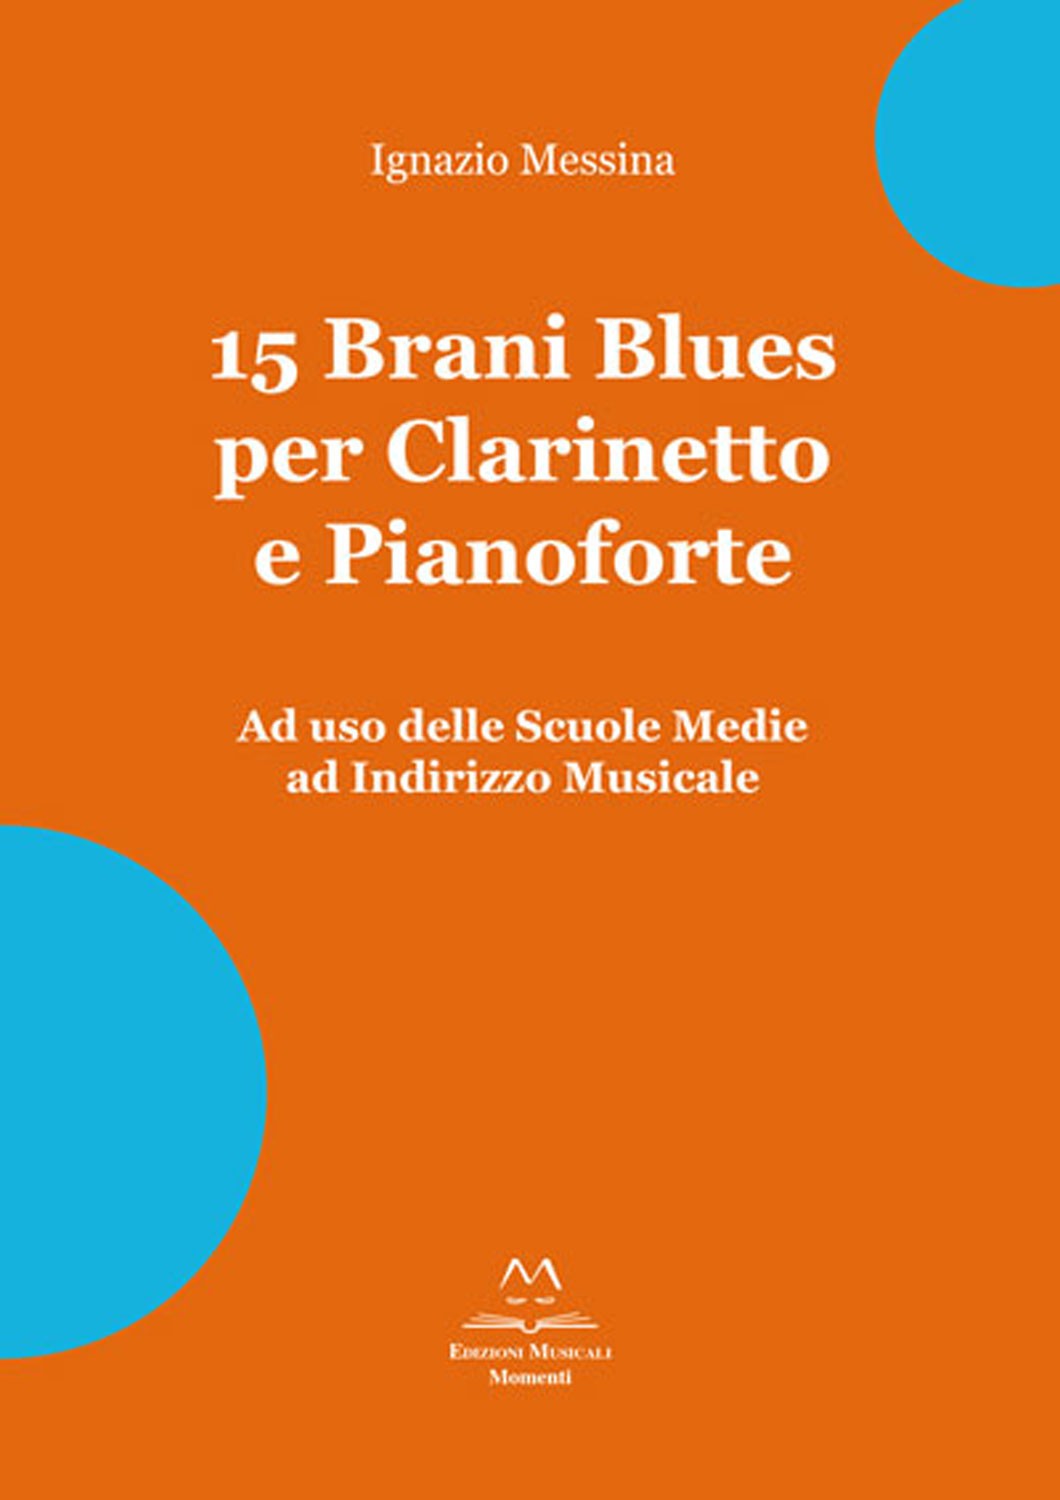 15 Brani Blues per Clarinetto e Pianoforte di Ignazio Messina